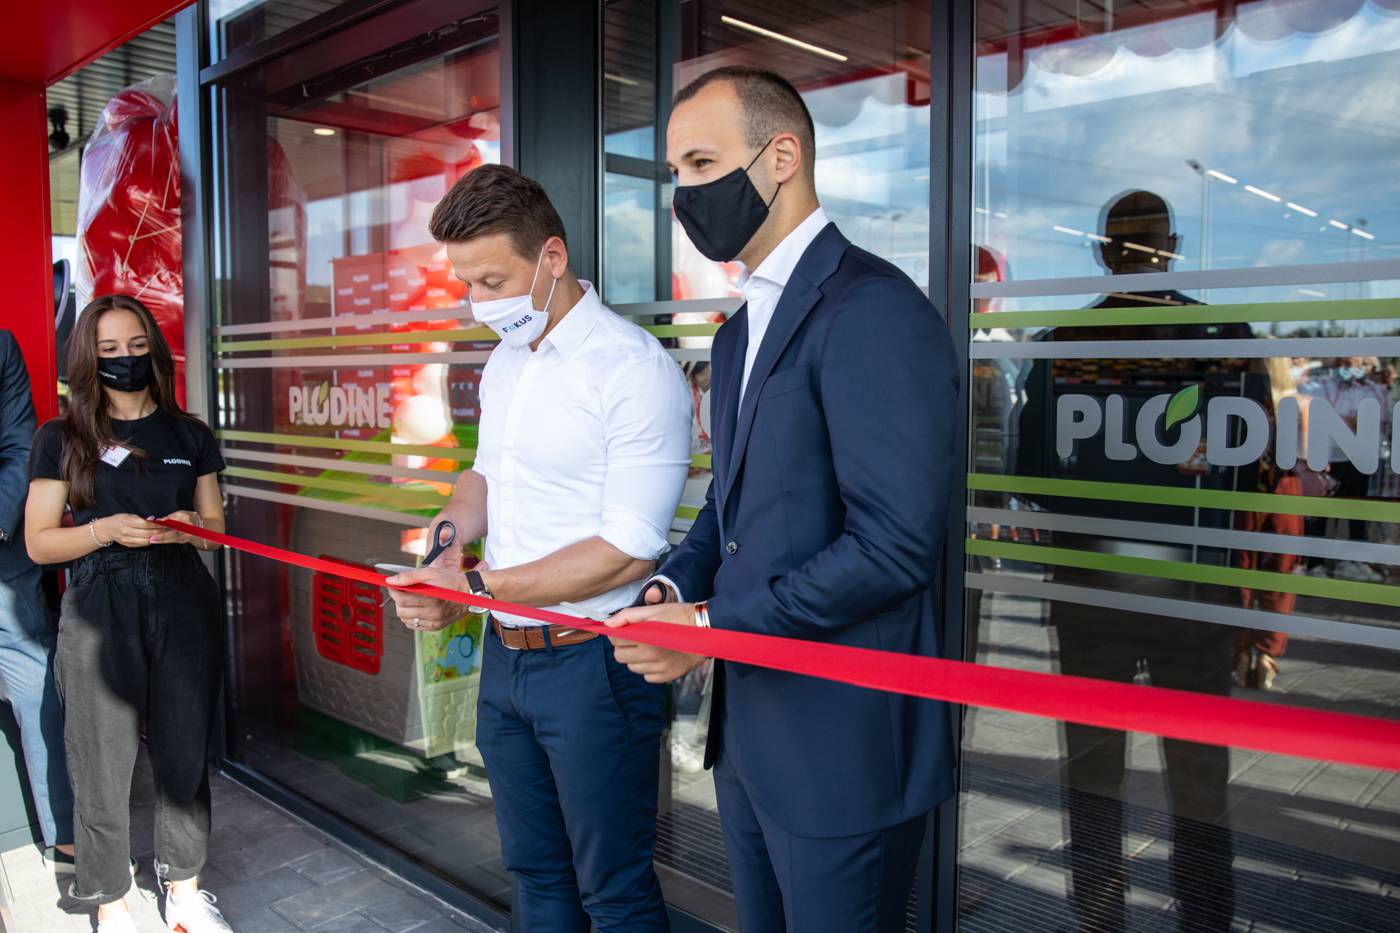 Plodine u Svetoj Nedelji otvorile svoj 101. supermarket